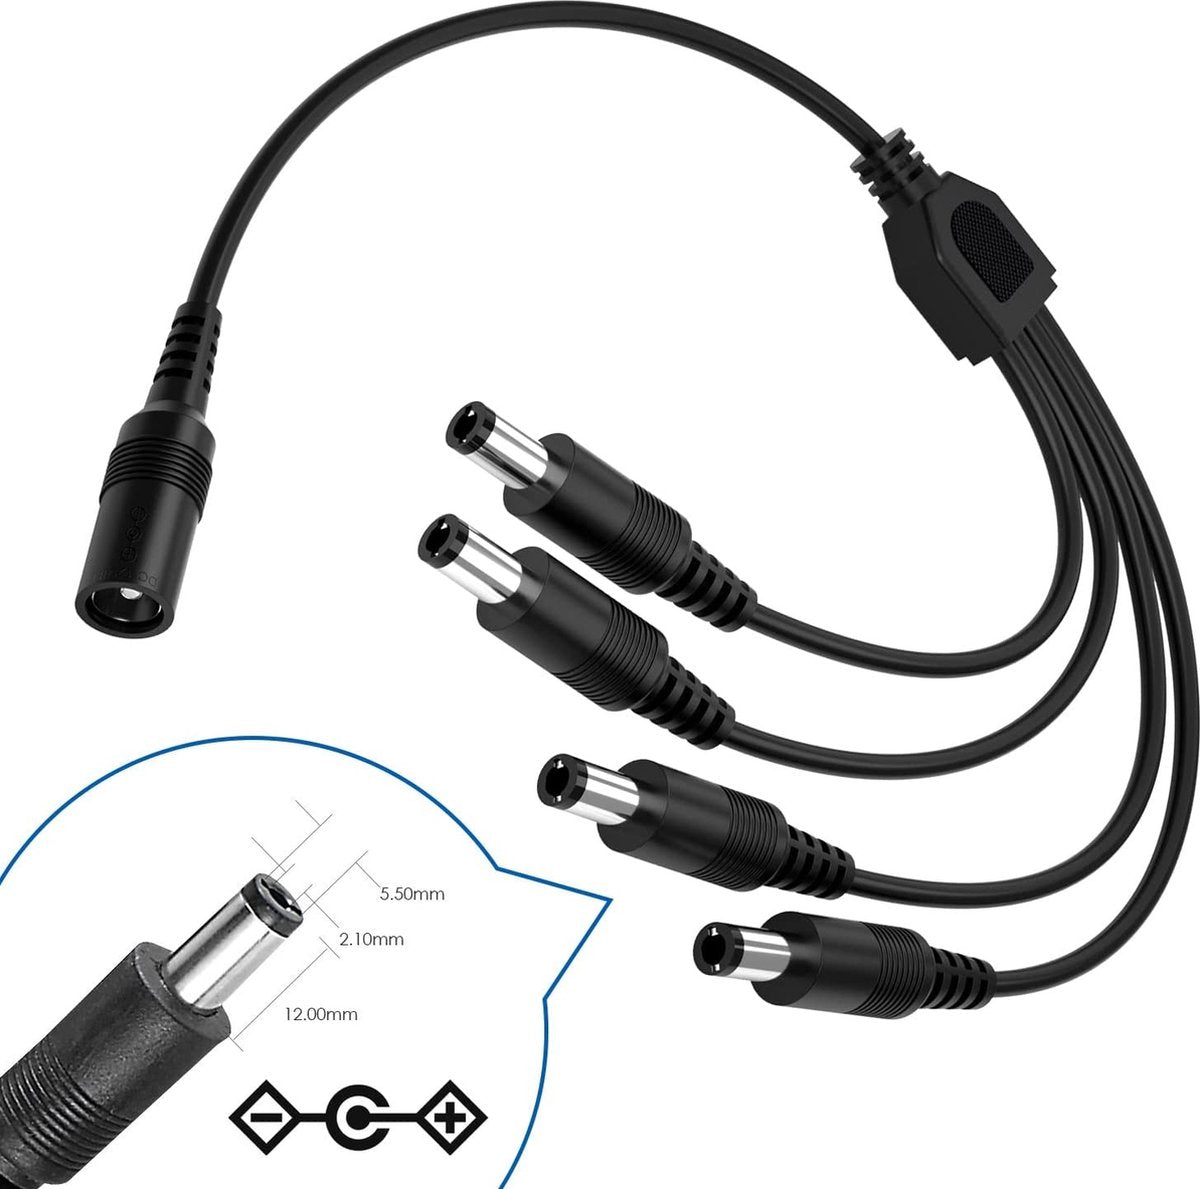 4-Way Splitter Kabel - Extension Cable - Voor CCTV Camera, TV Box, Router & Meer - Adapter - 1x DC (V) Naar 4x DC (M)